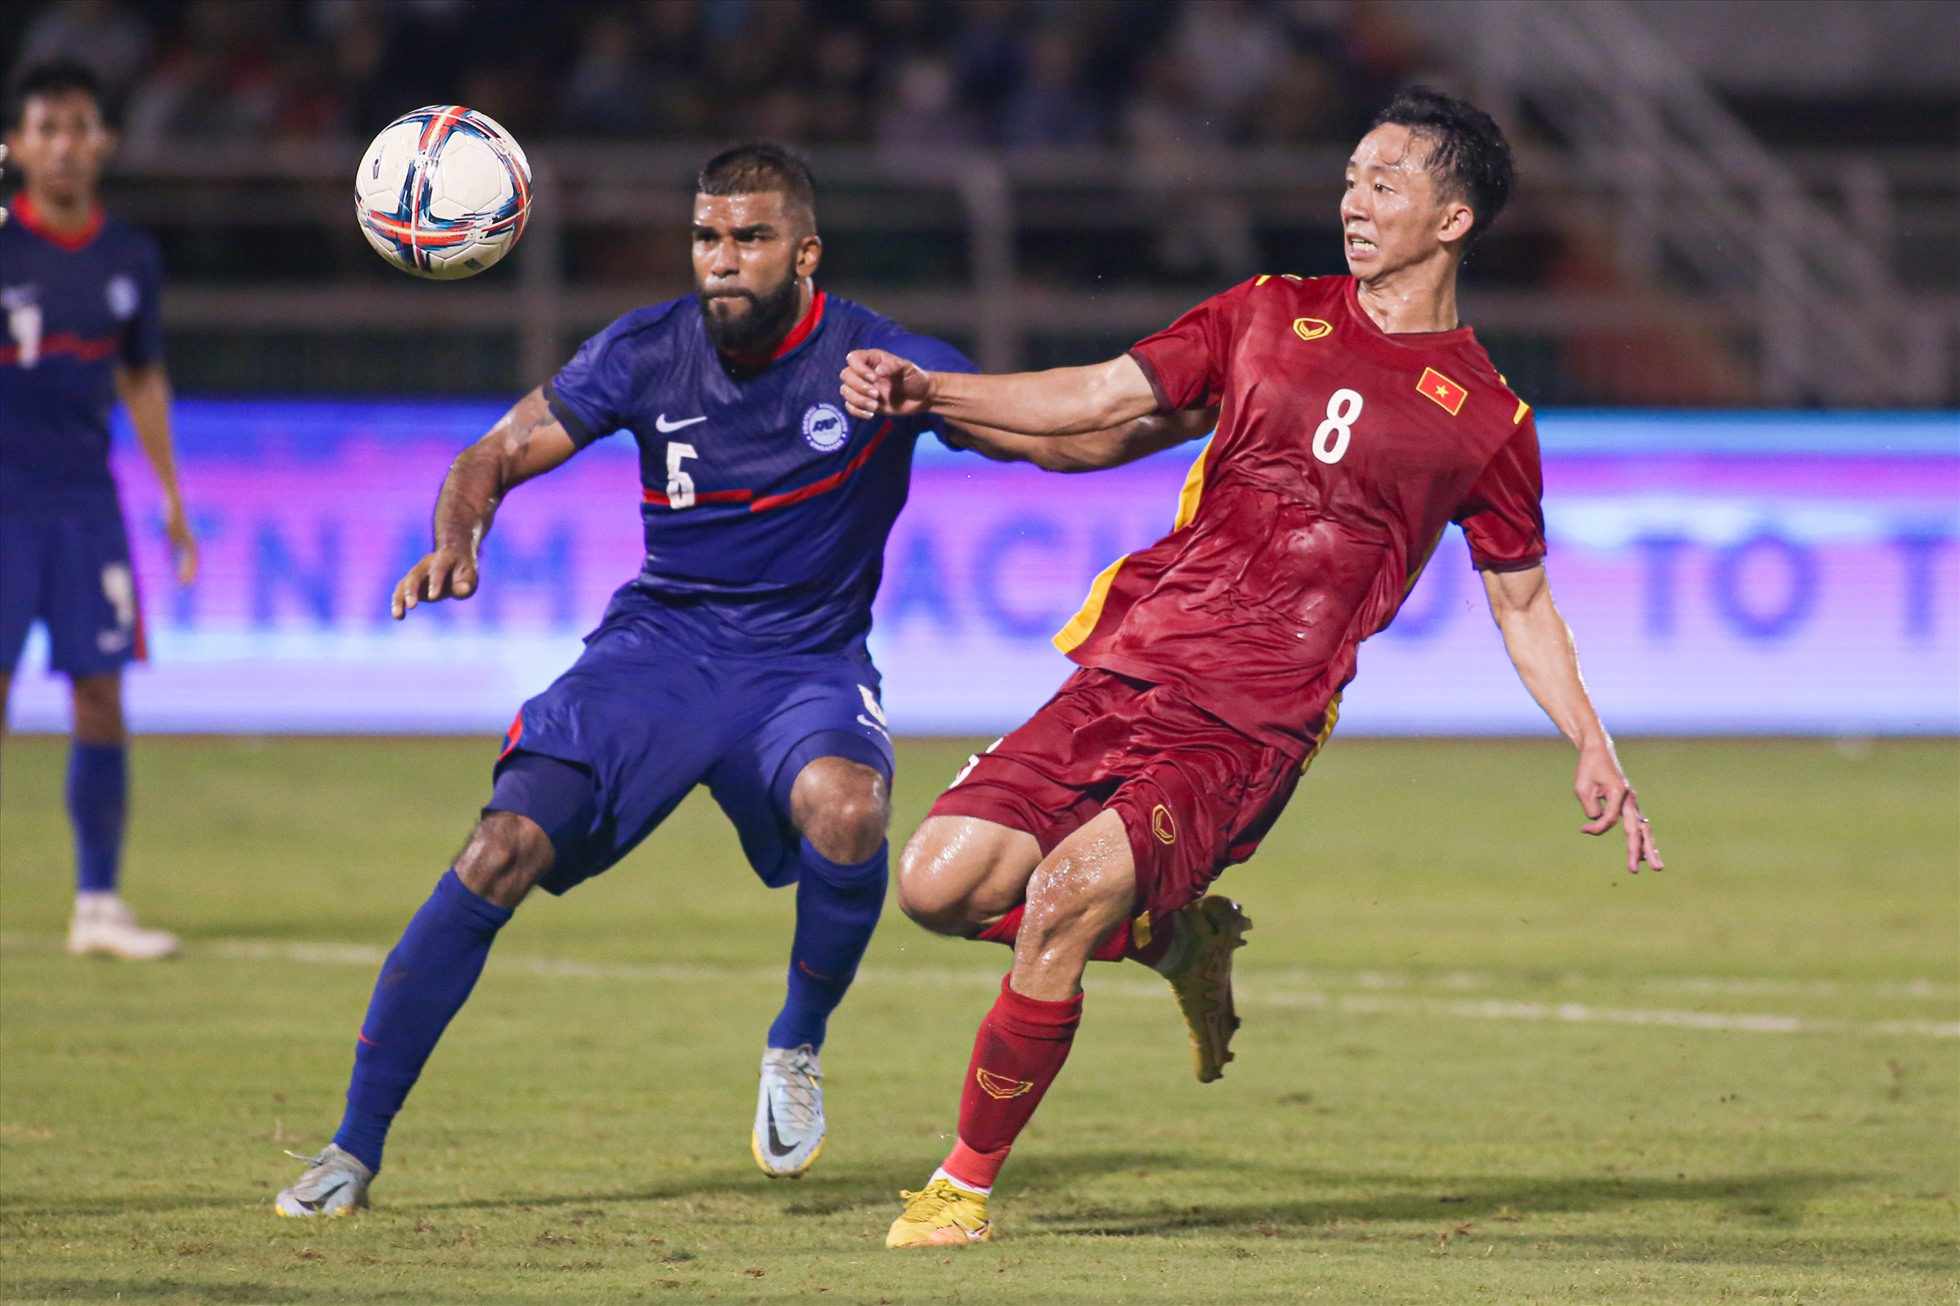 Bàn thắng của Văn Quyết tạo tâm lý thoải mái giúp các cầu thủ của tuyển Việt Nam thi đấu thanh thoát hơn trong hiệp 2.